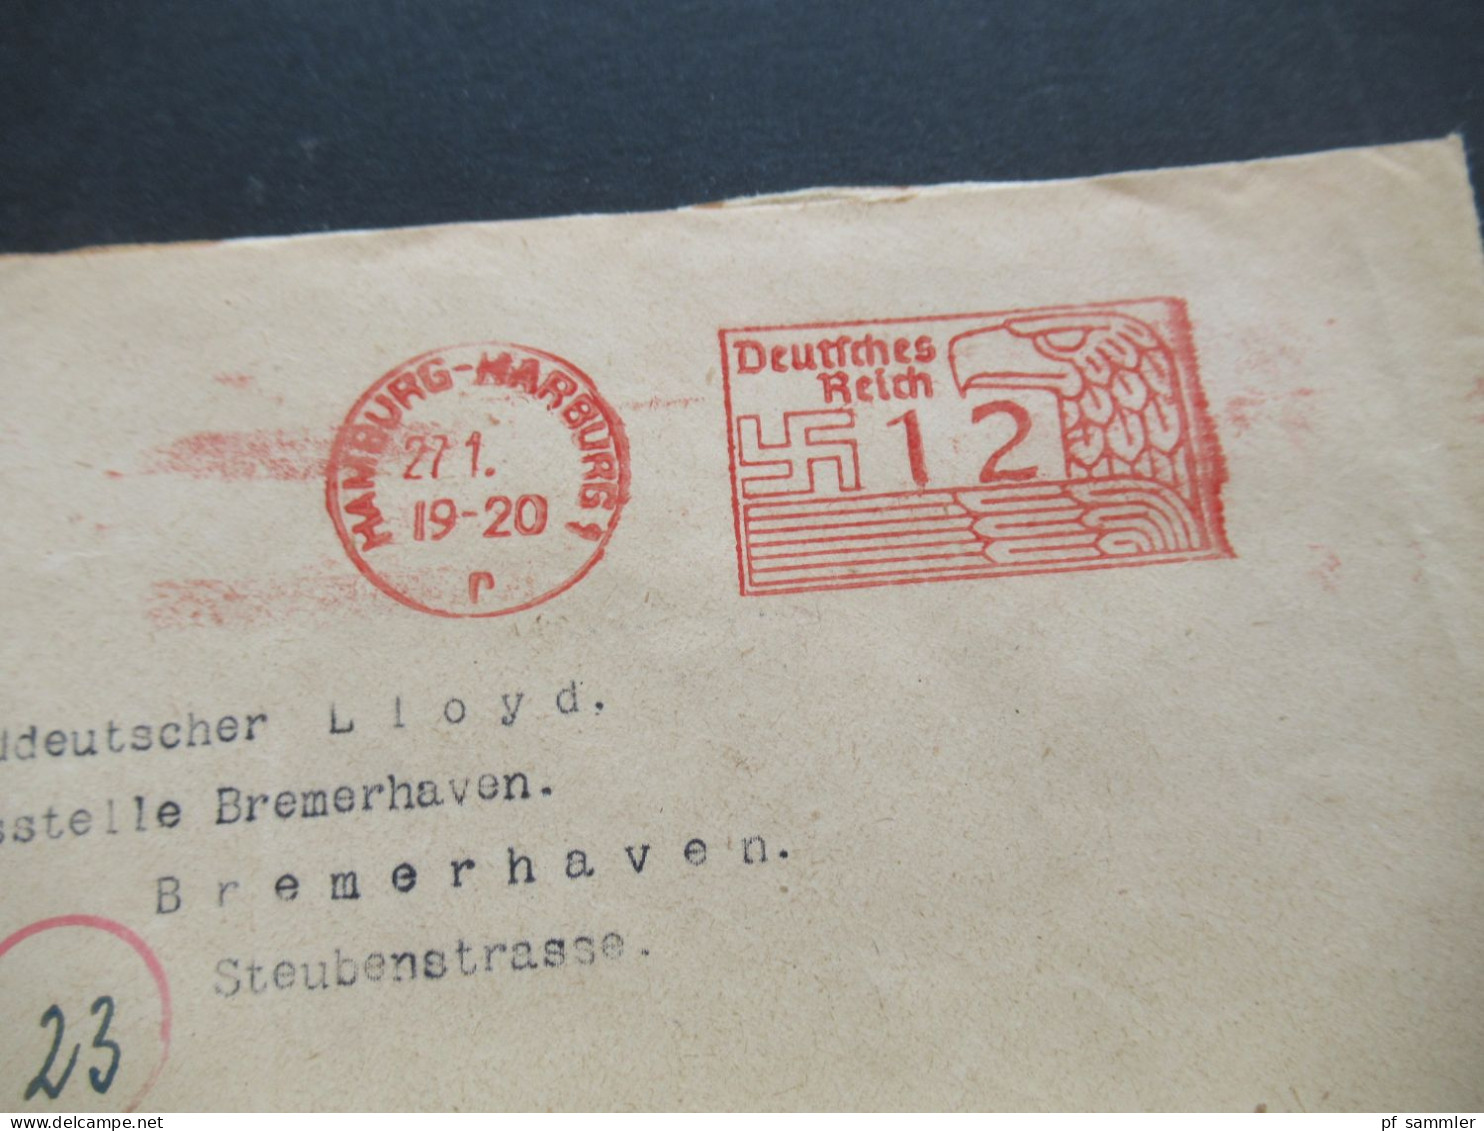 Bizone Am Post Deutscher Druck MiF Geschäftspost Tagesstempel Wesermümde 2.10.1945 doppelt verwendeter Umschlag!!